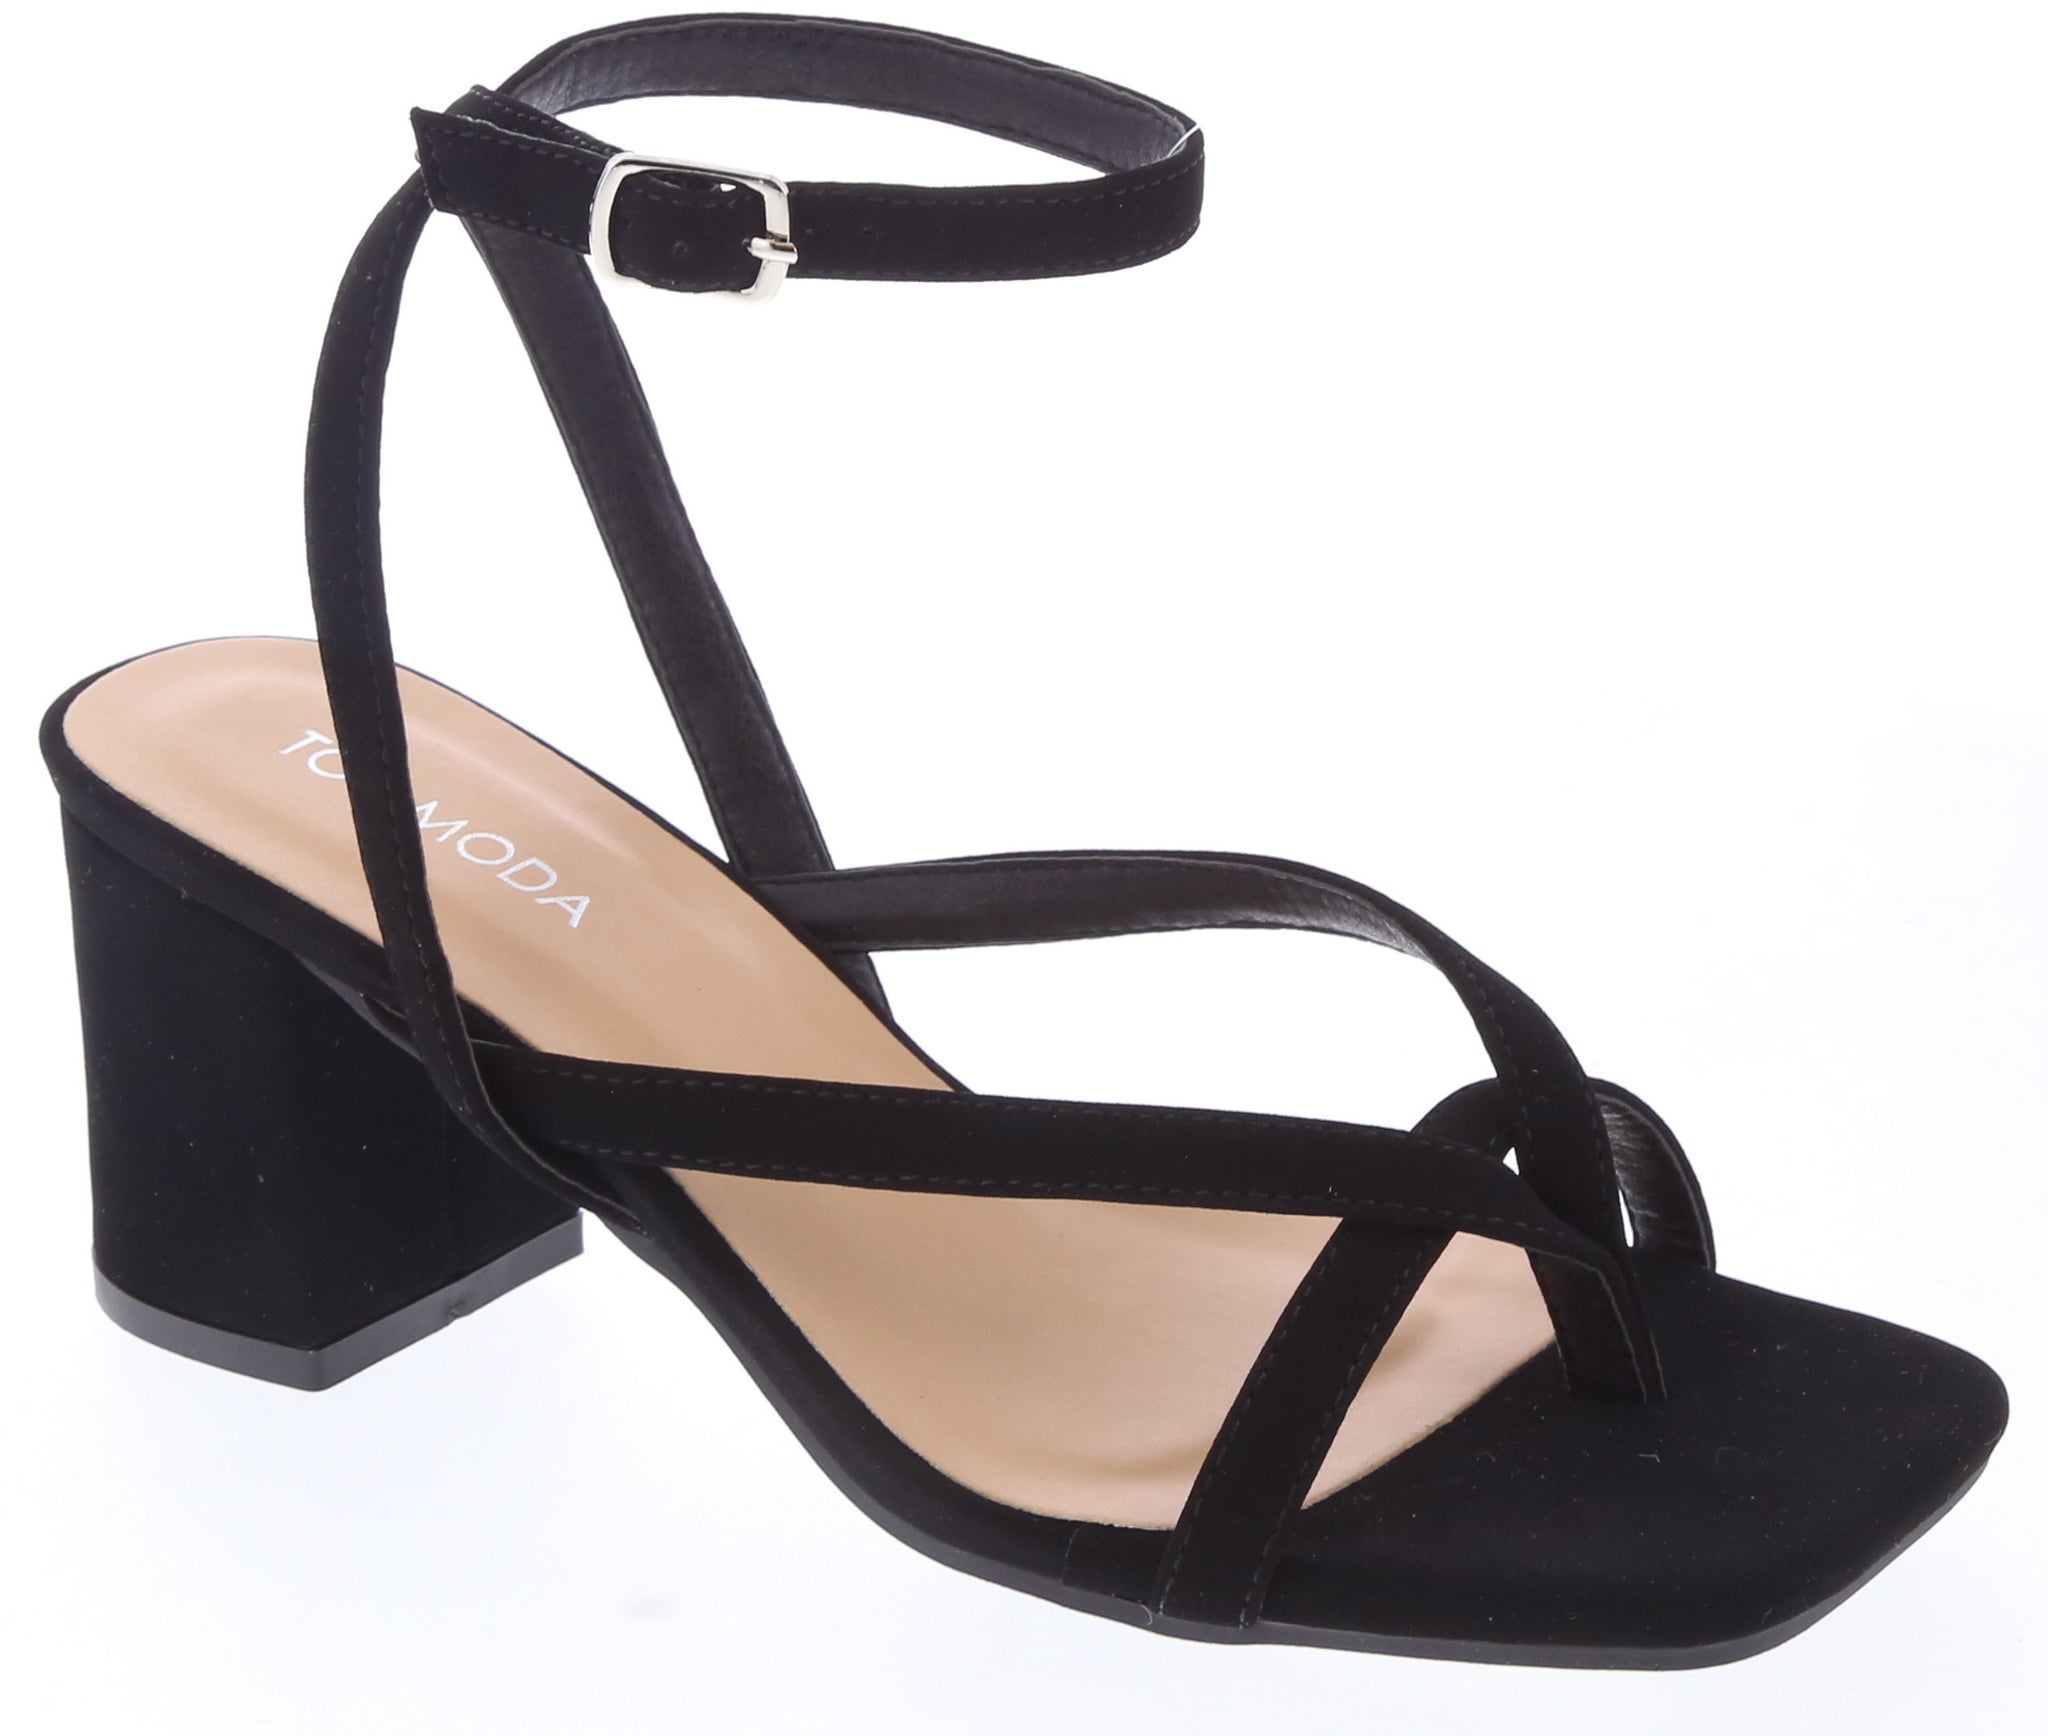 Black Platform Sandals - High Heeled Sandals - Ankle Wrap Sandals - Lulus